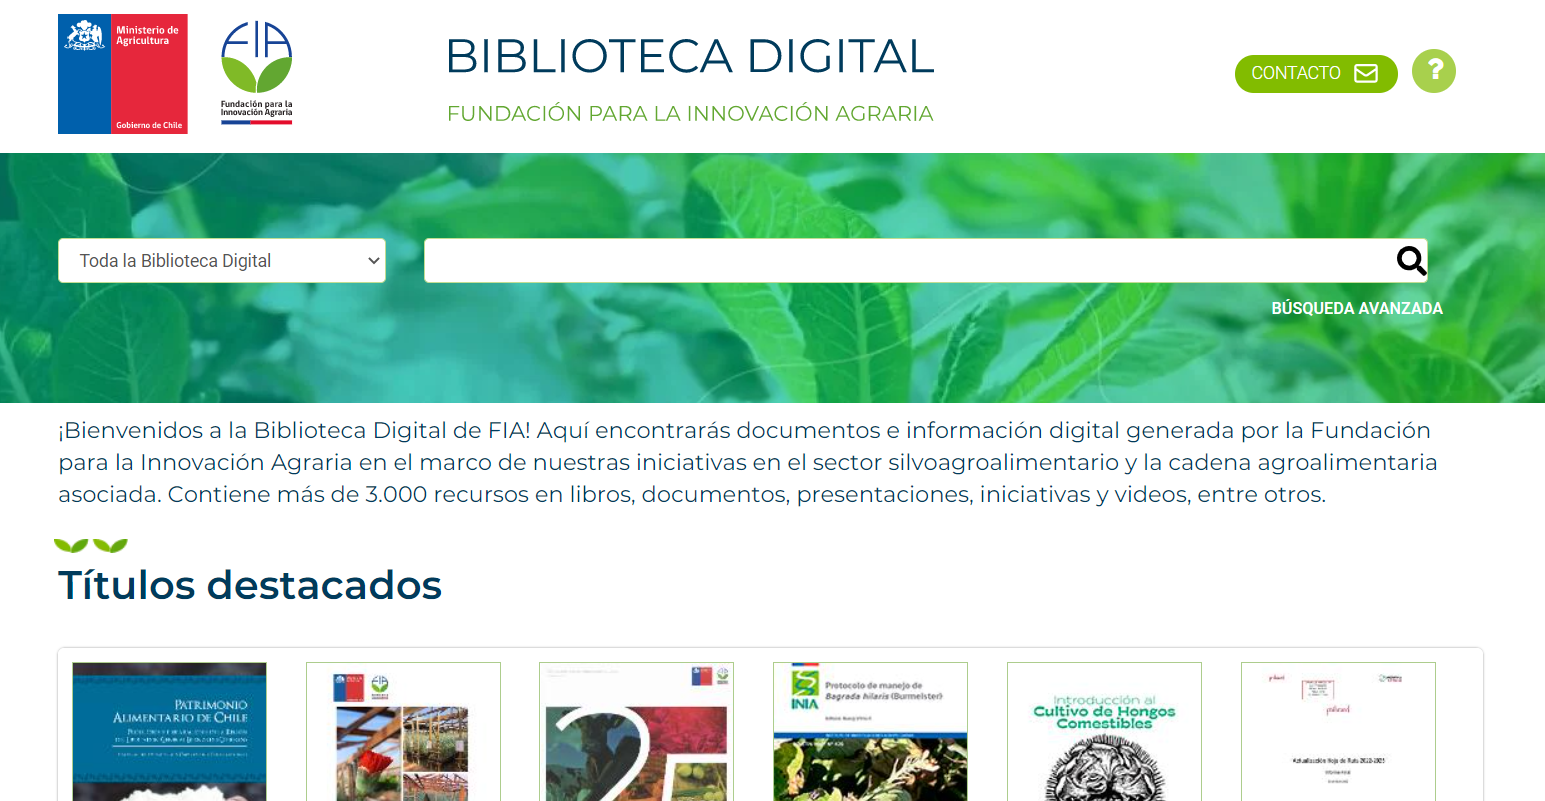 Segundo año consecutivo de Soporte Técnico Biblioteca Digital FIA